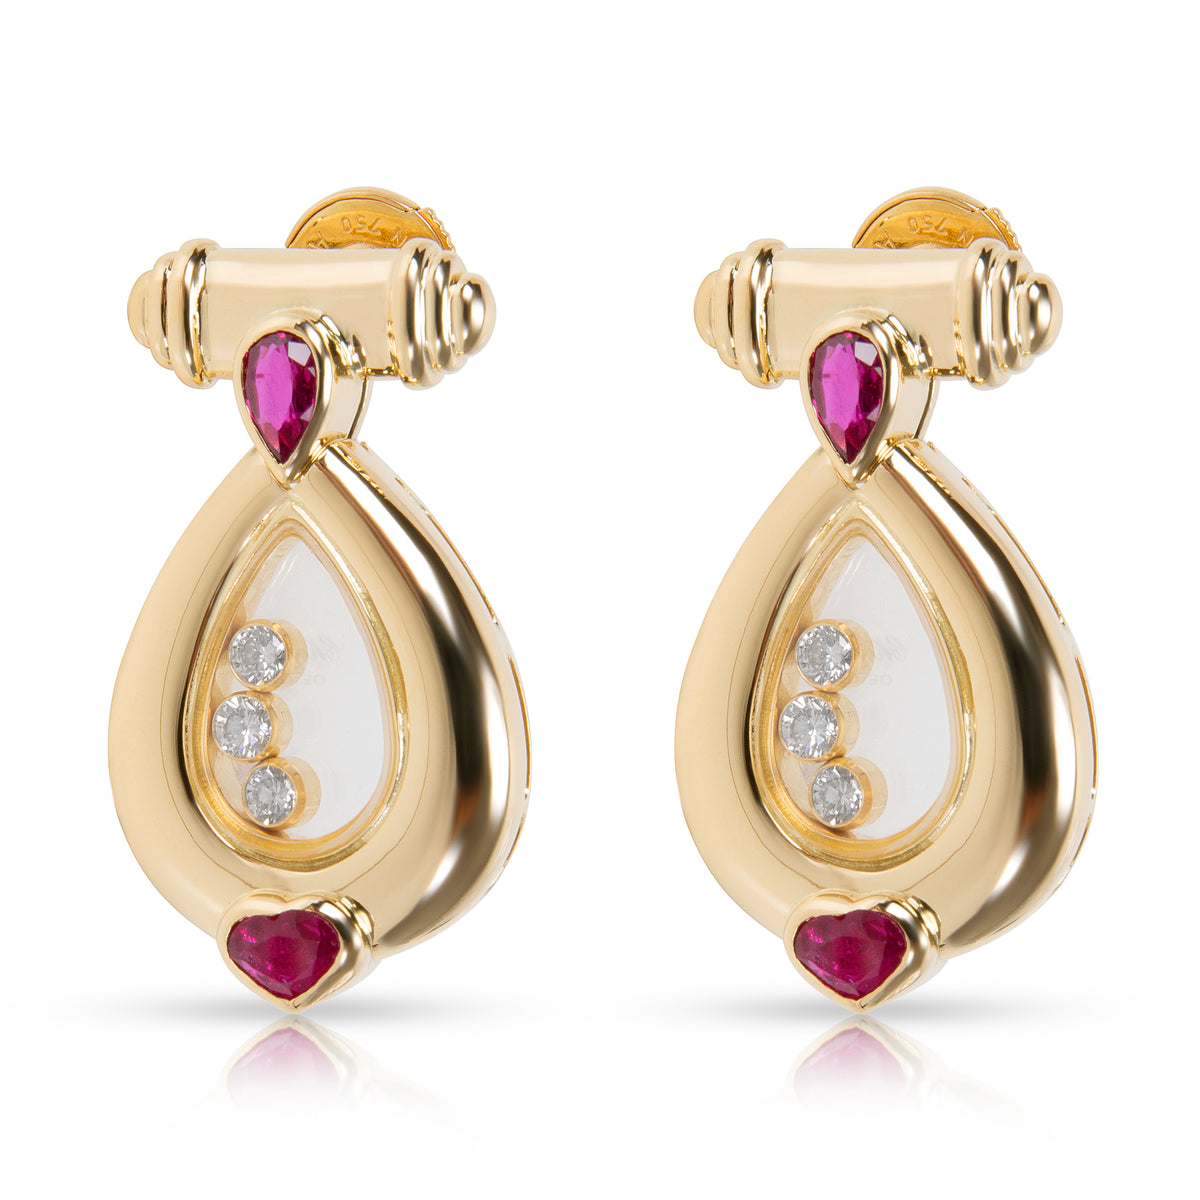 Chopard Vintage Happy Diamonds & Rubies Earrings in 18K Yellow Gold